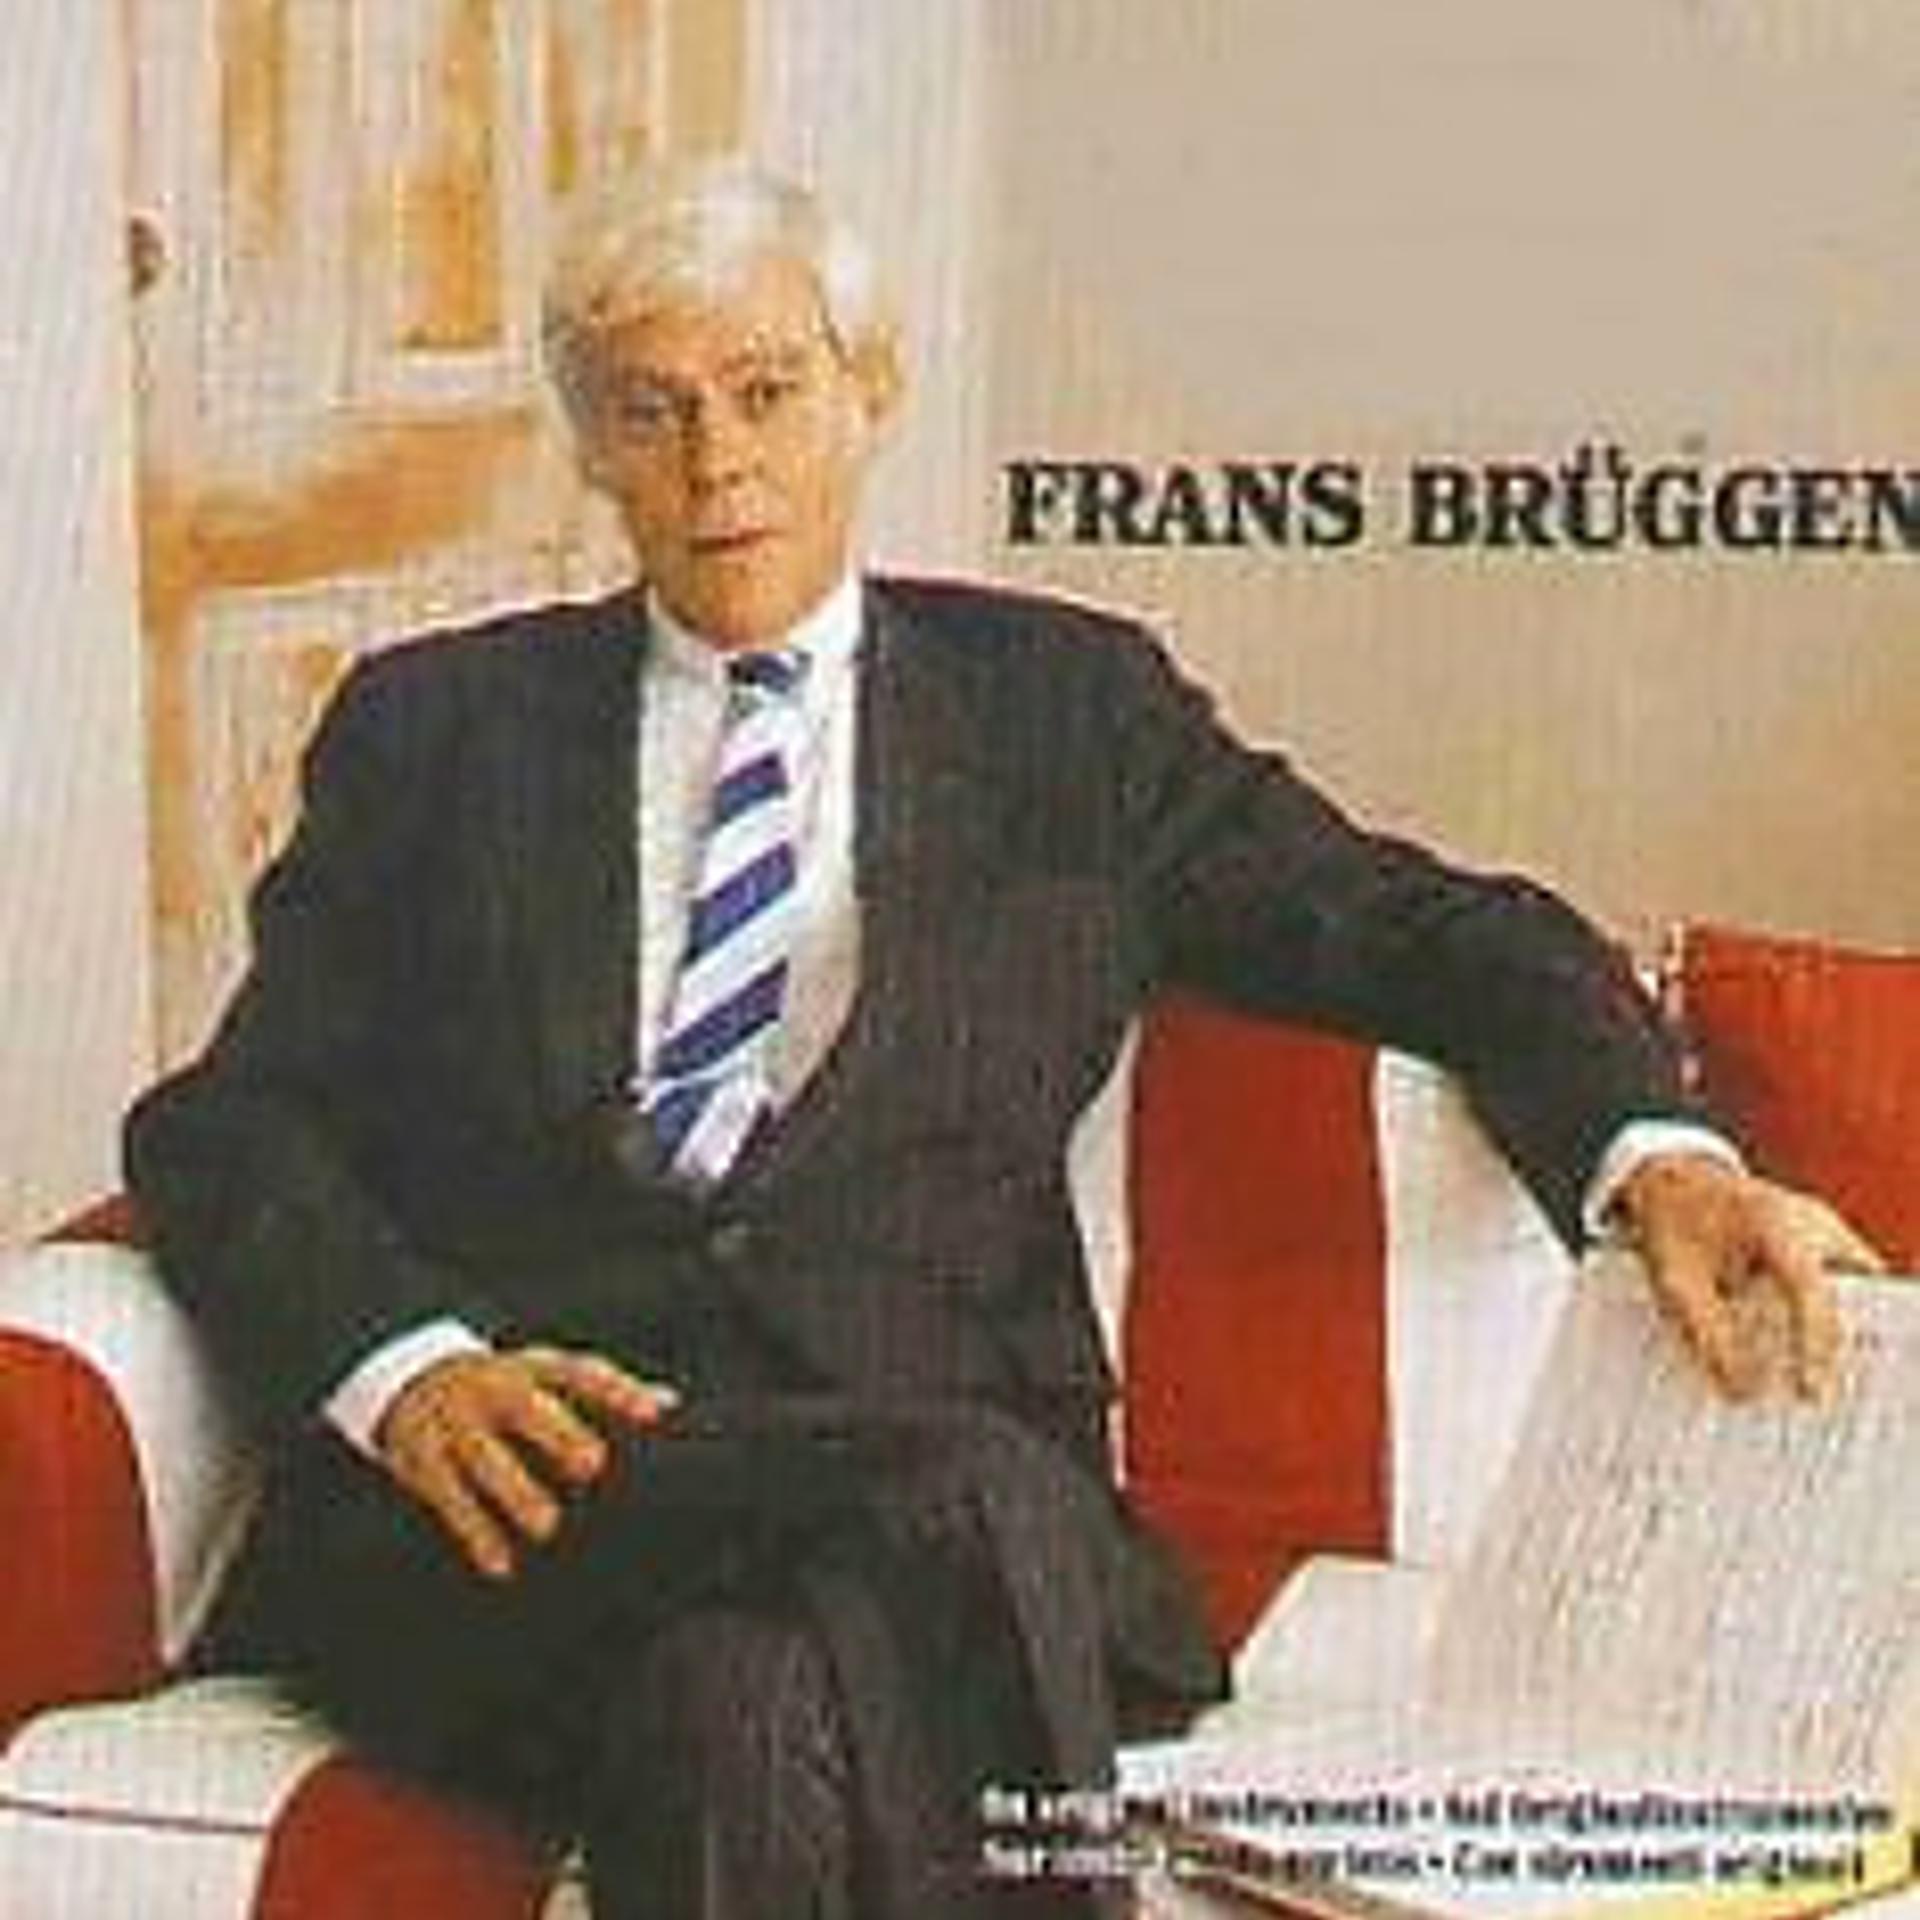 Frans Bruggen - фото